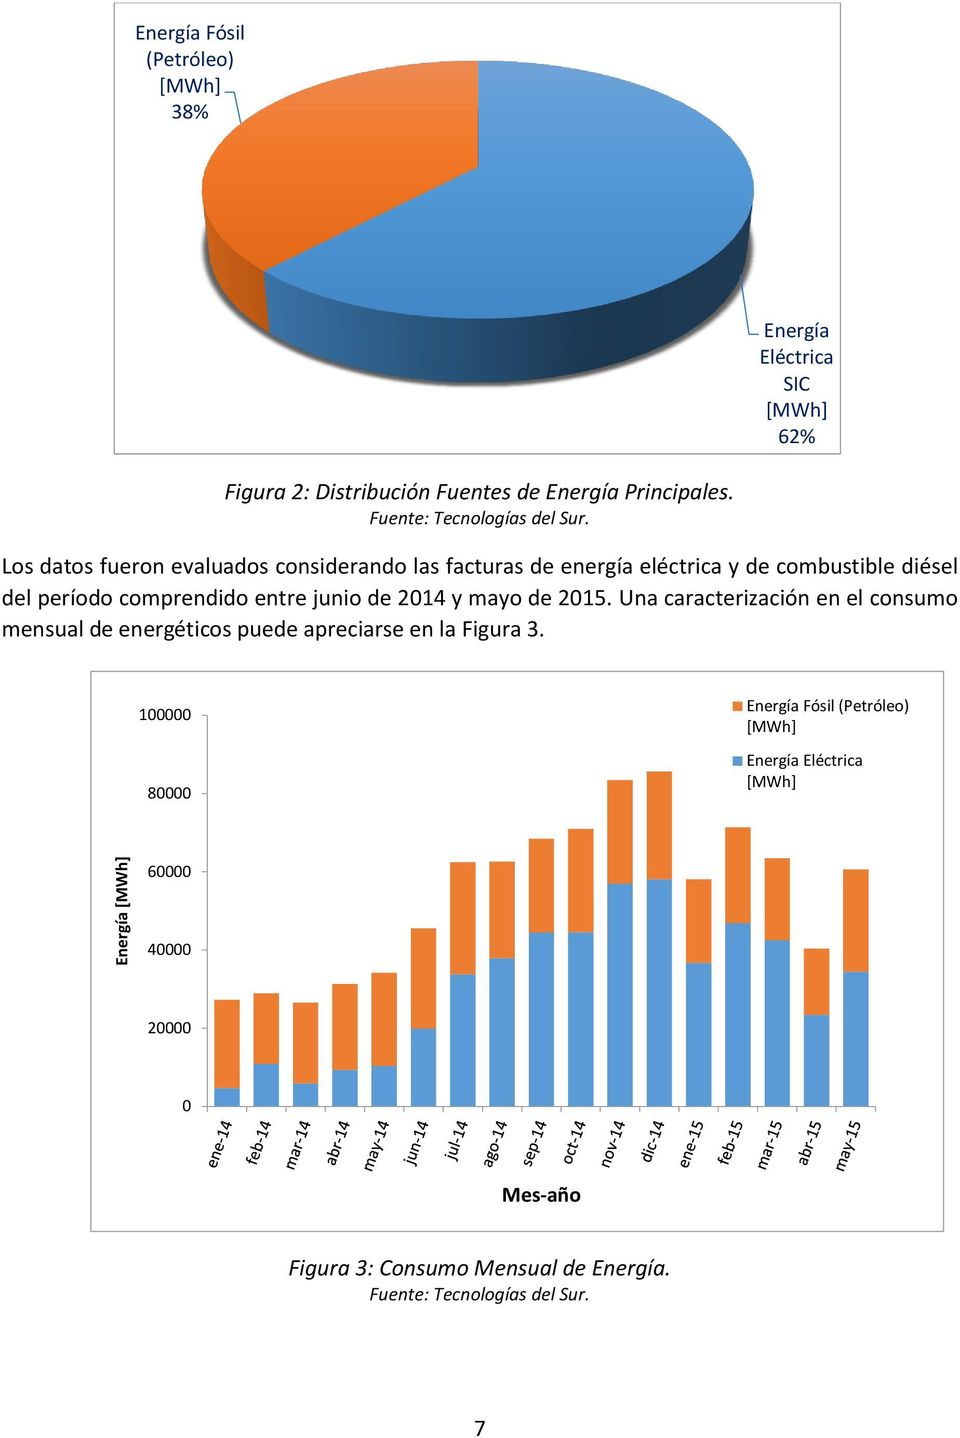 Los datos fueron evaluados considerando las facturas de energía eléctrica y de combustible diésel del período comprendido entre